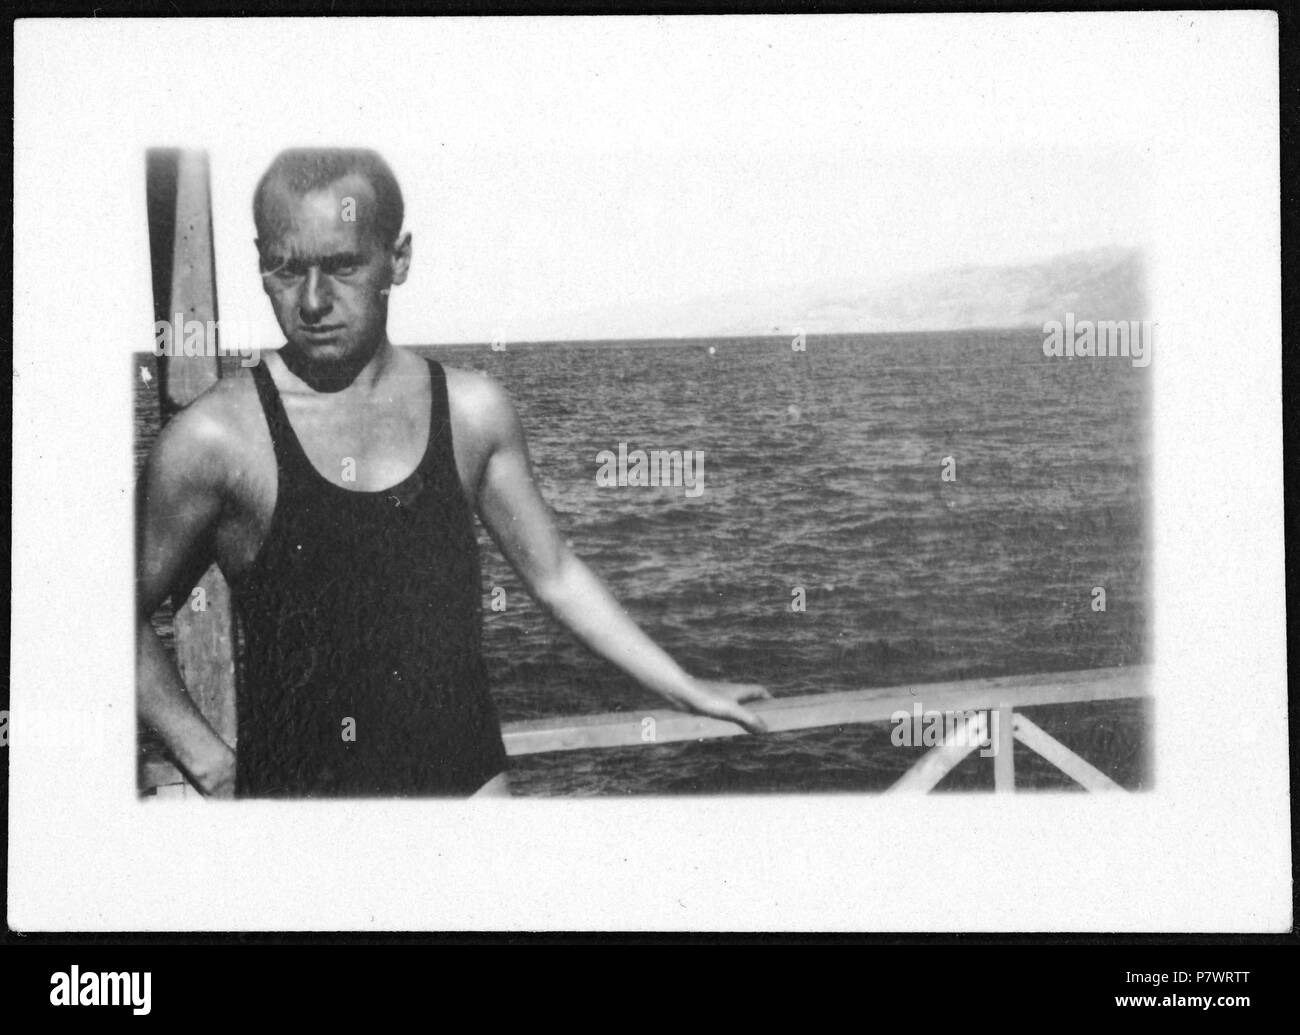 Schwimmen (Lokalisierung unsicher); Ein Mann im Badeanzug am Wasser. Dal 1935 fino al 1935 82 CH-NB - Schwimmen (Lokalisierung unsicher) - Annemarie Schwarzenbach - SLA-Schwarzenbach-UN-5-07188 Foto Stock